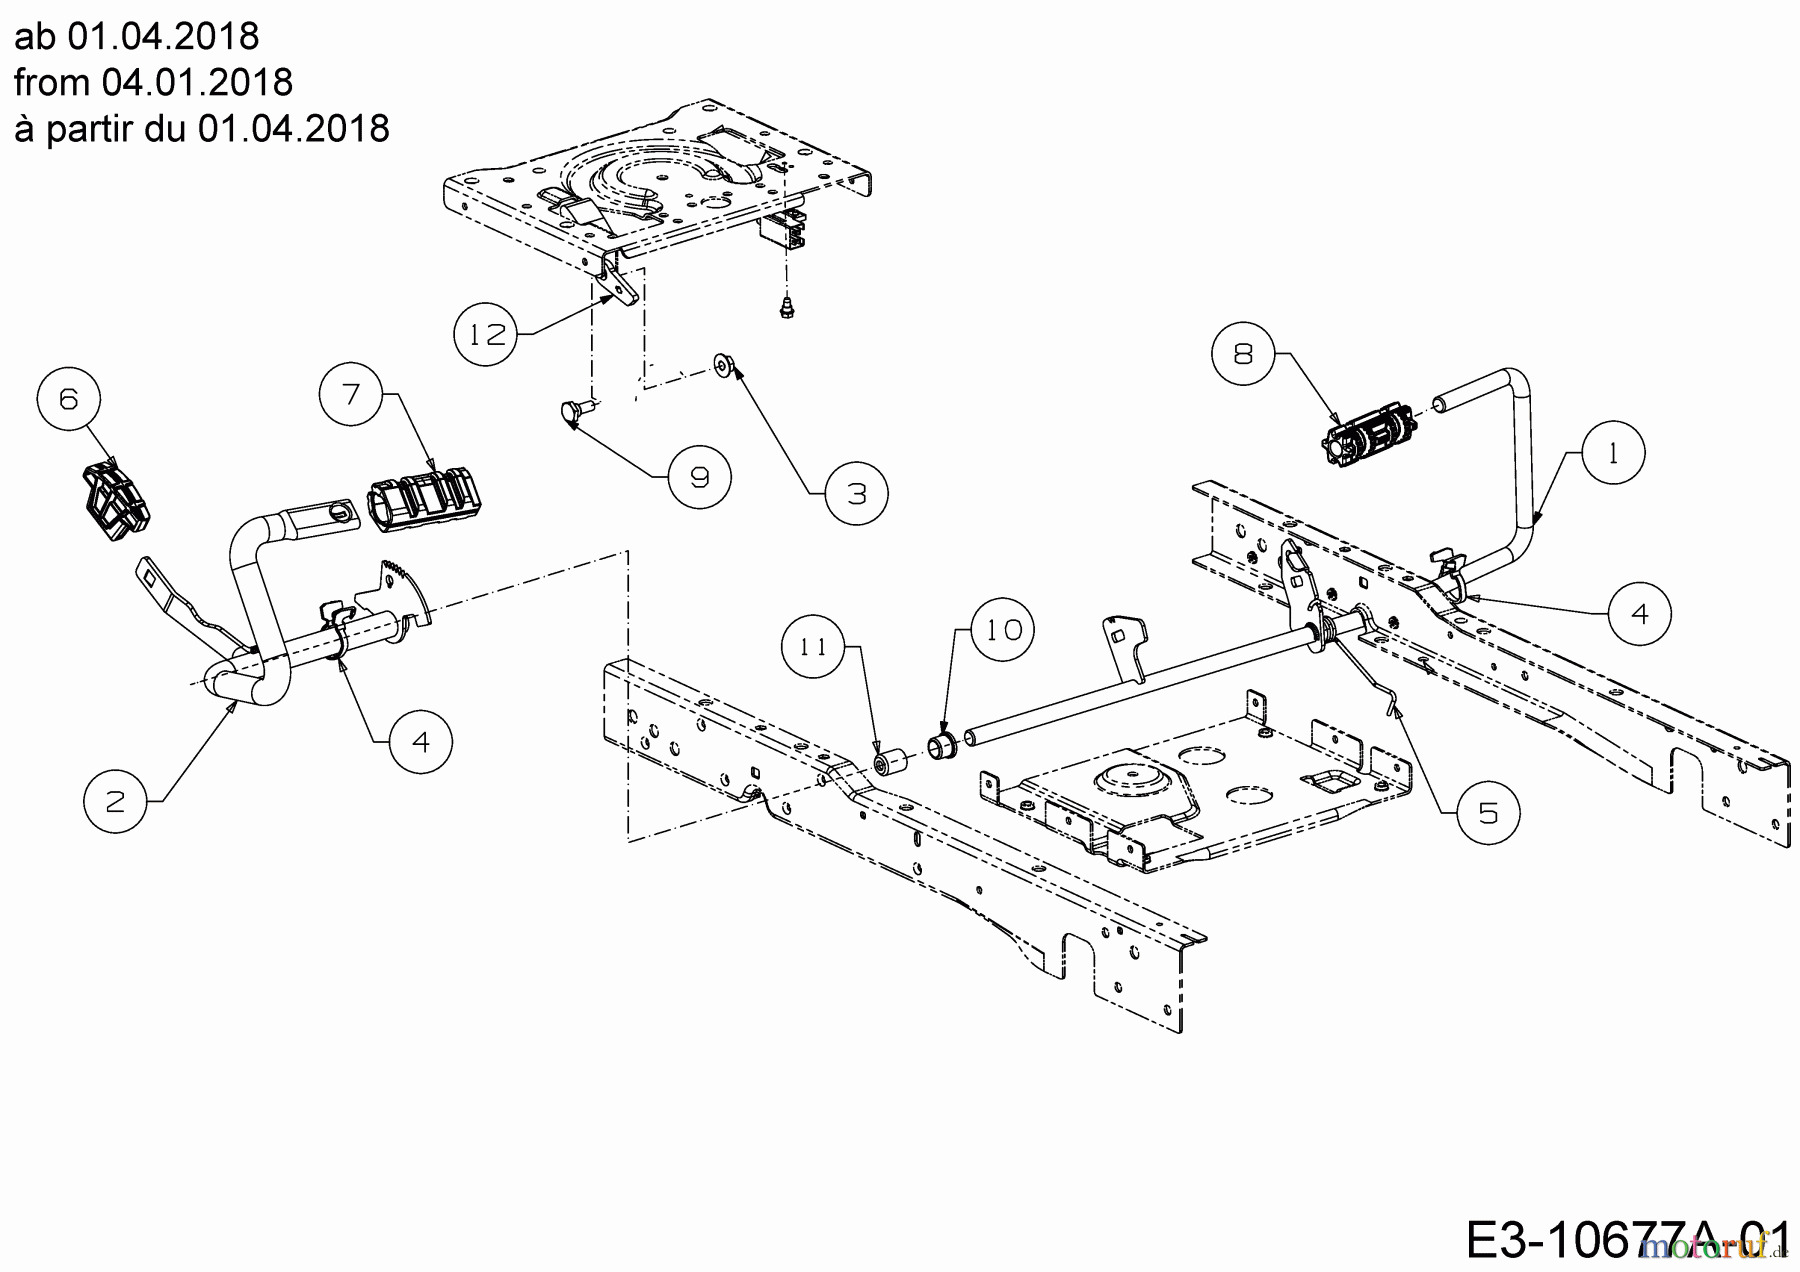  Cub Cadet Lawn tractors XT1 OS107 13A8A1CS603  (2018) Pedals from 04.01.2018